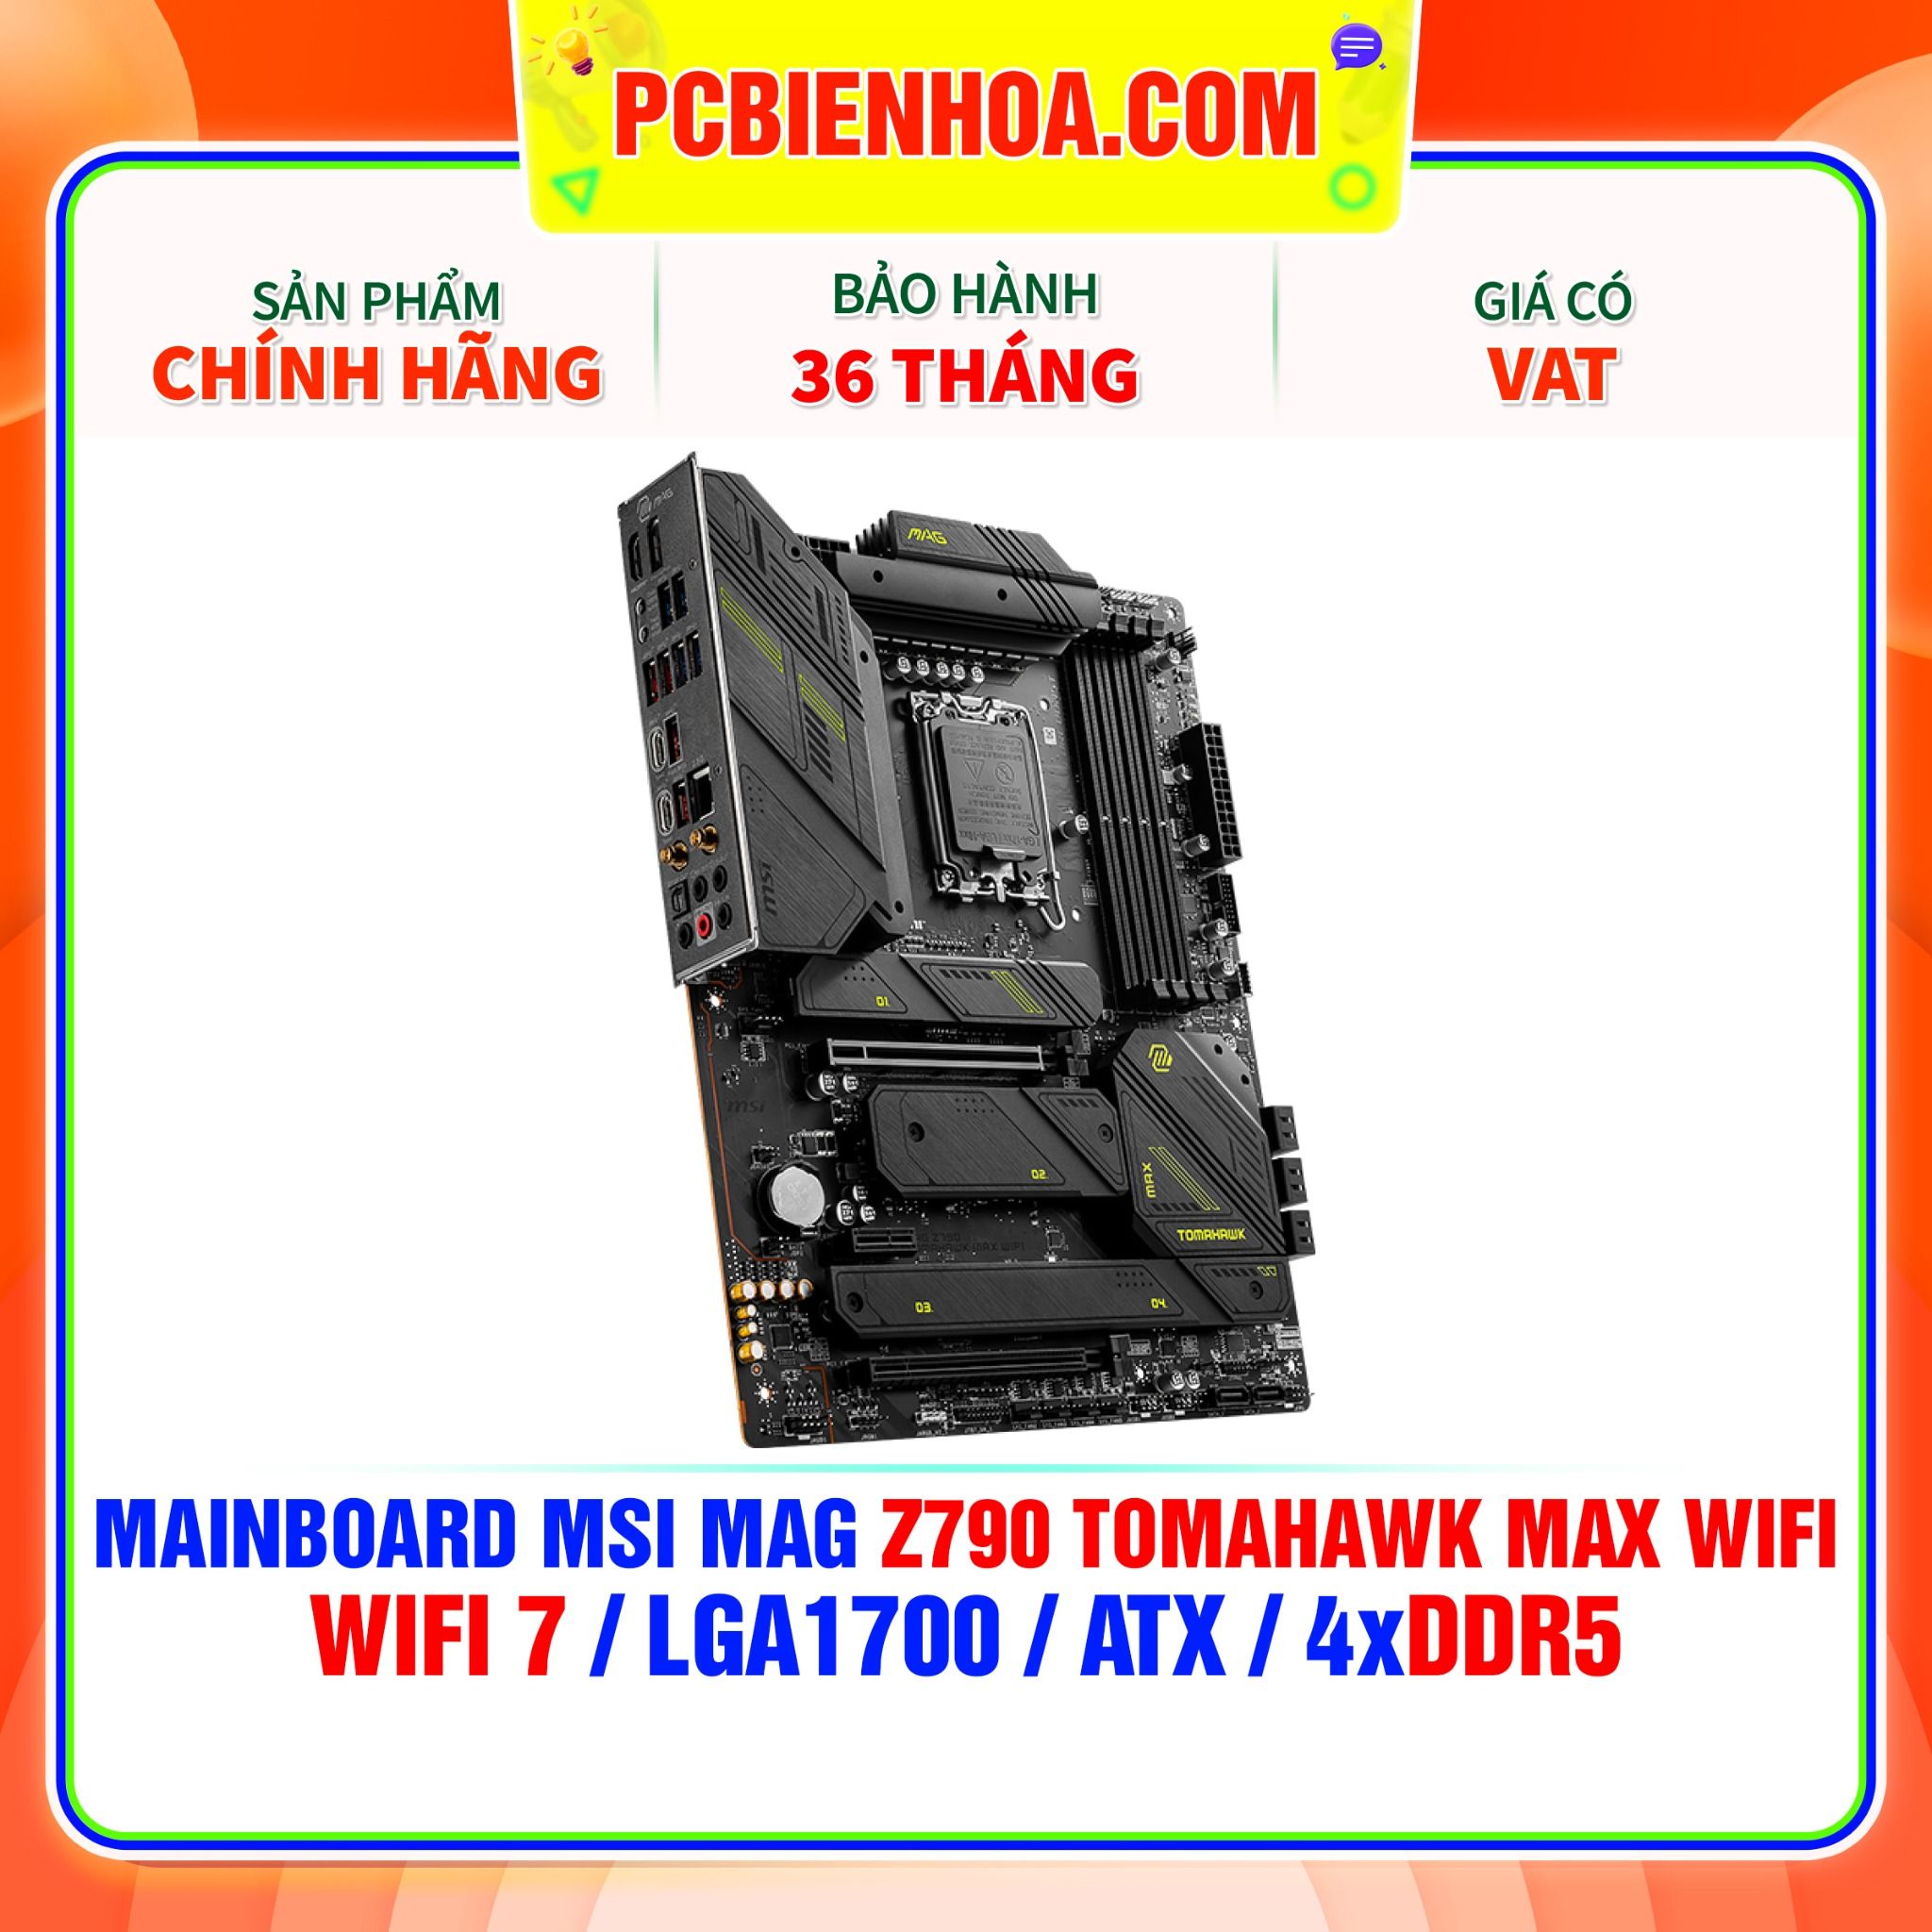  DDR5 - MAINBOARD MSI MAG Z790 TOMAHAWK MAX WIFI ( WIFI 7 / LGA1700 / ATX / 4xDDR5 ) 